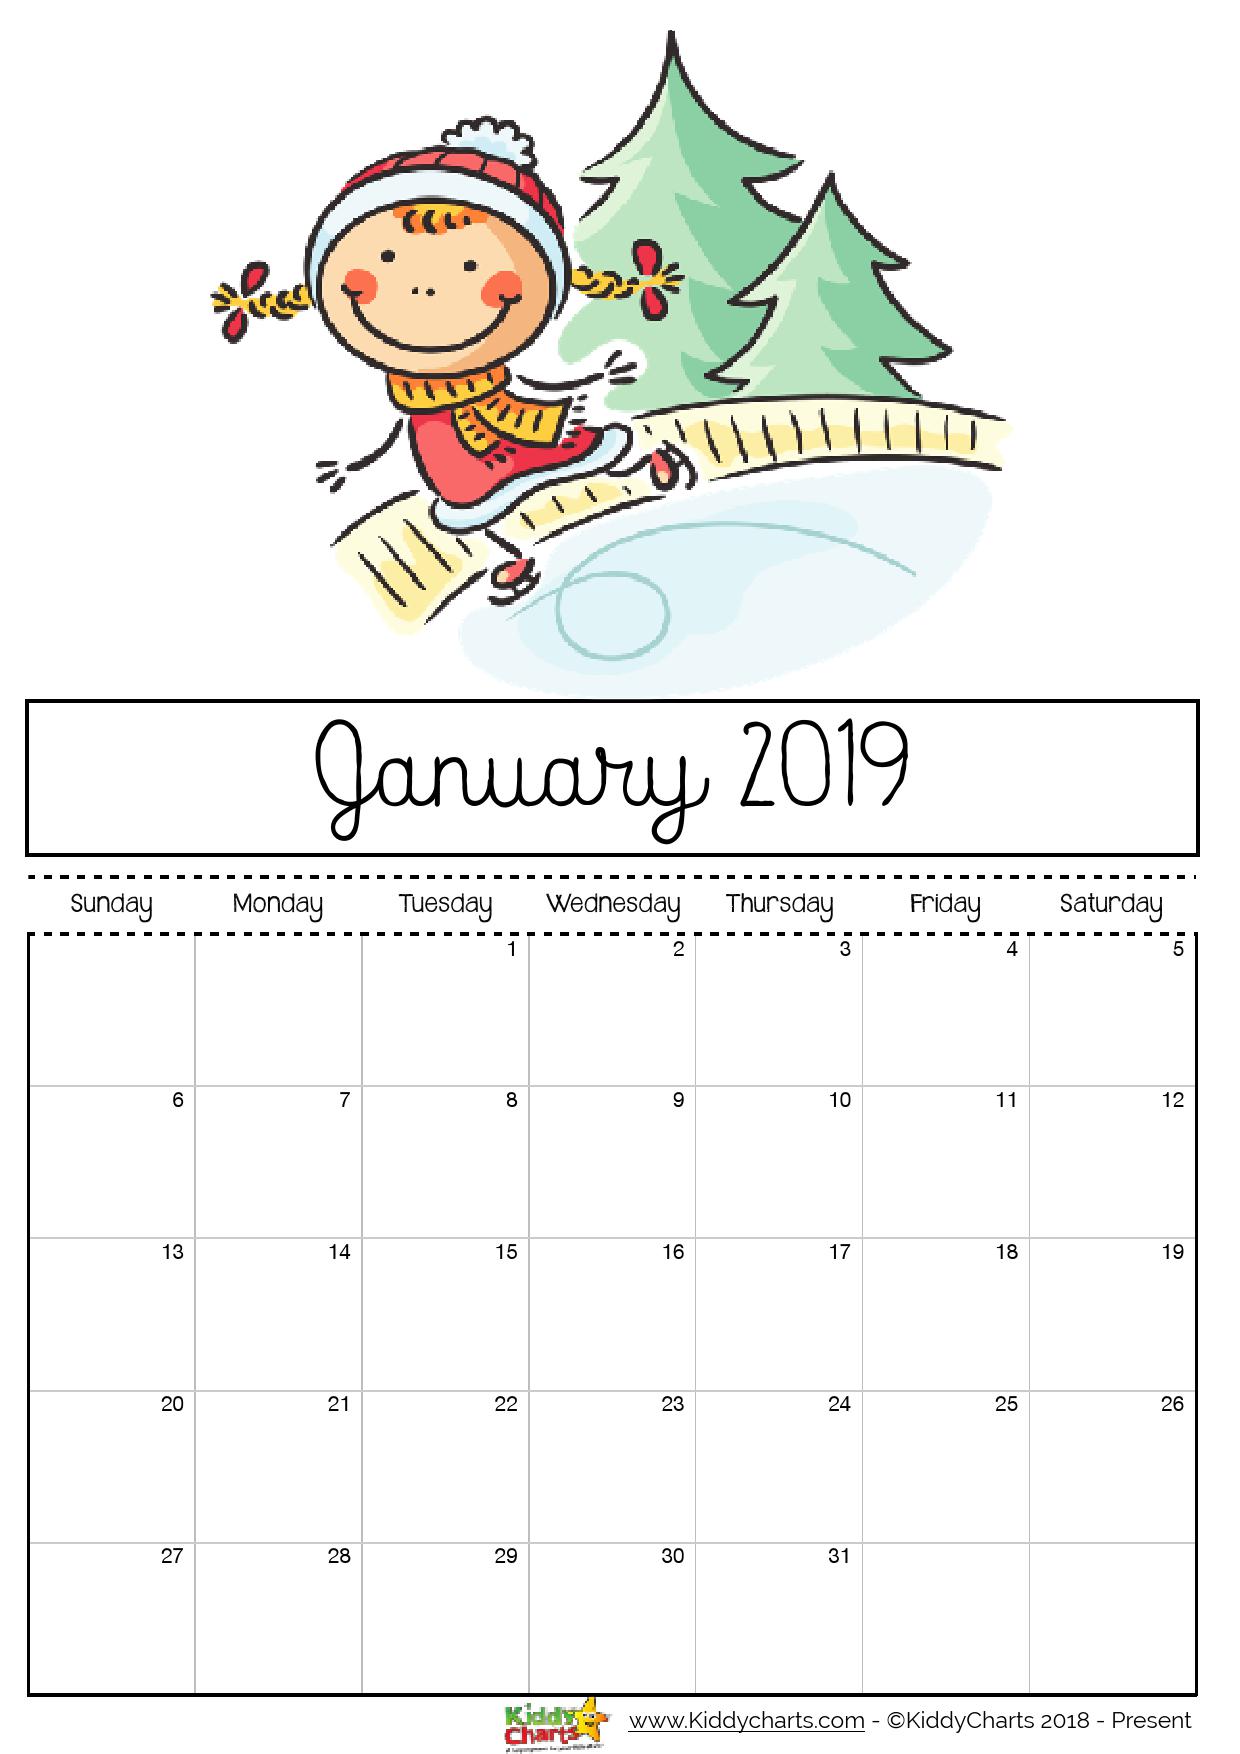 January printable 2019 calendar - girl playing on an ice rink. Perhaps something you can do too?!? #calendar2019 #printables #kidsprintables 